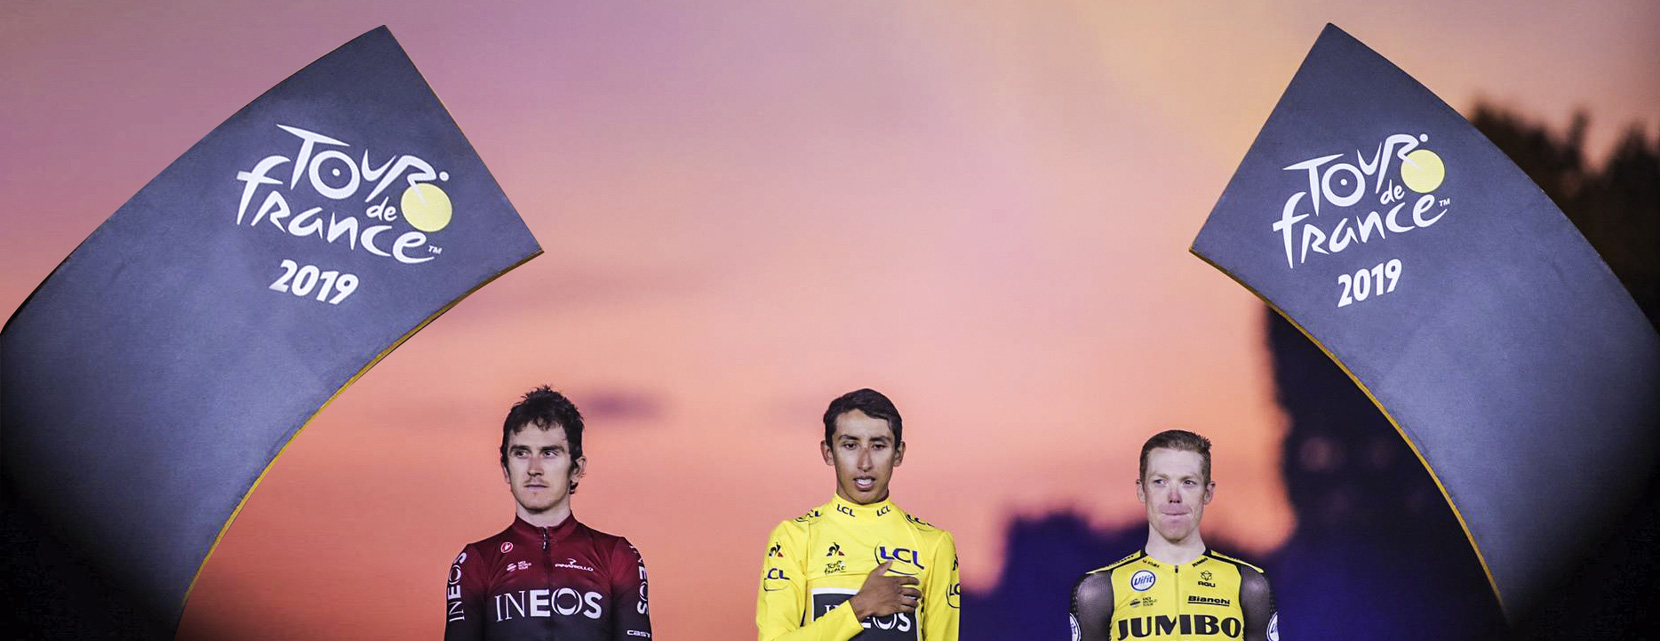 Tour de France podium